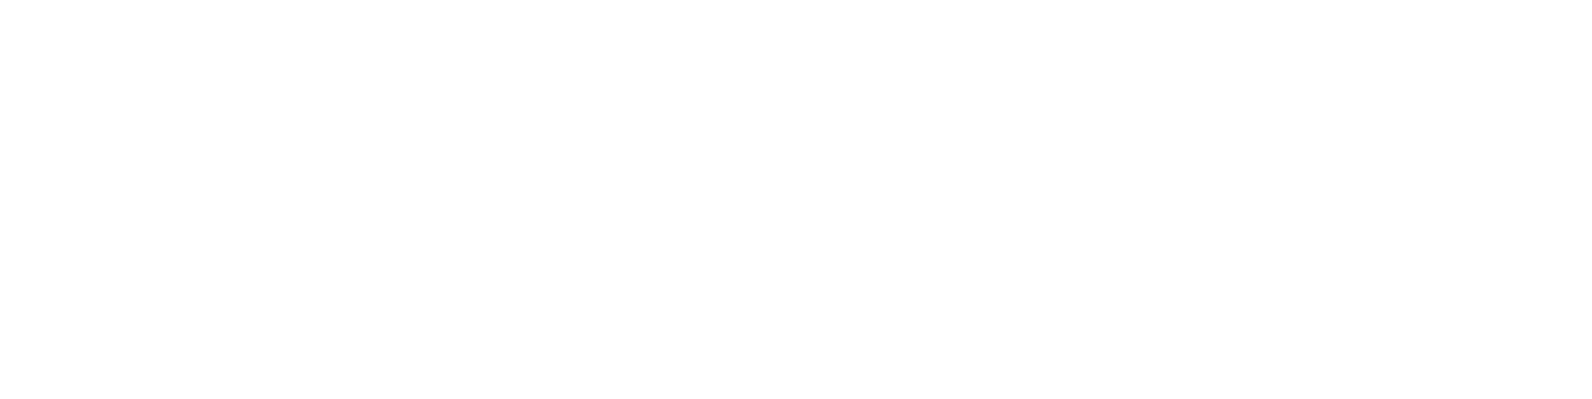 QuantaSing Group logo grand pour les fonds sombres (PNG transparent)